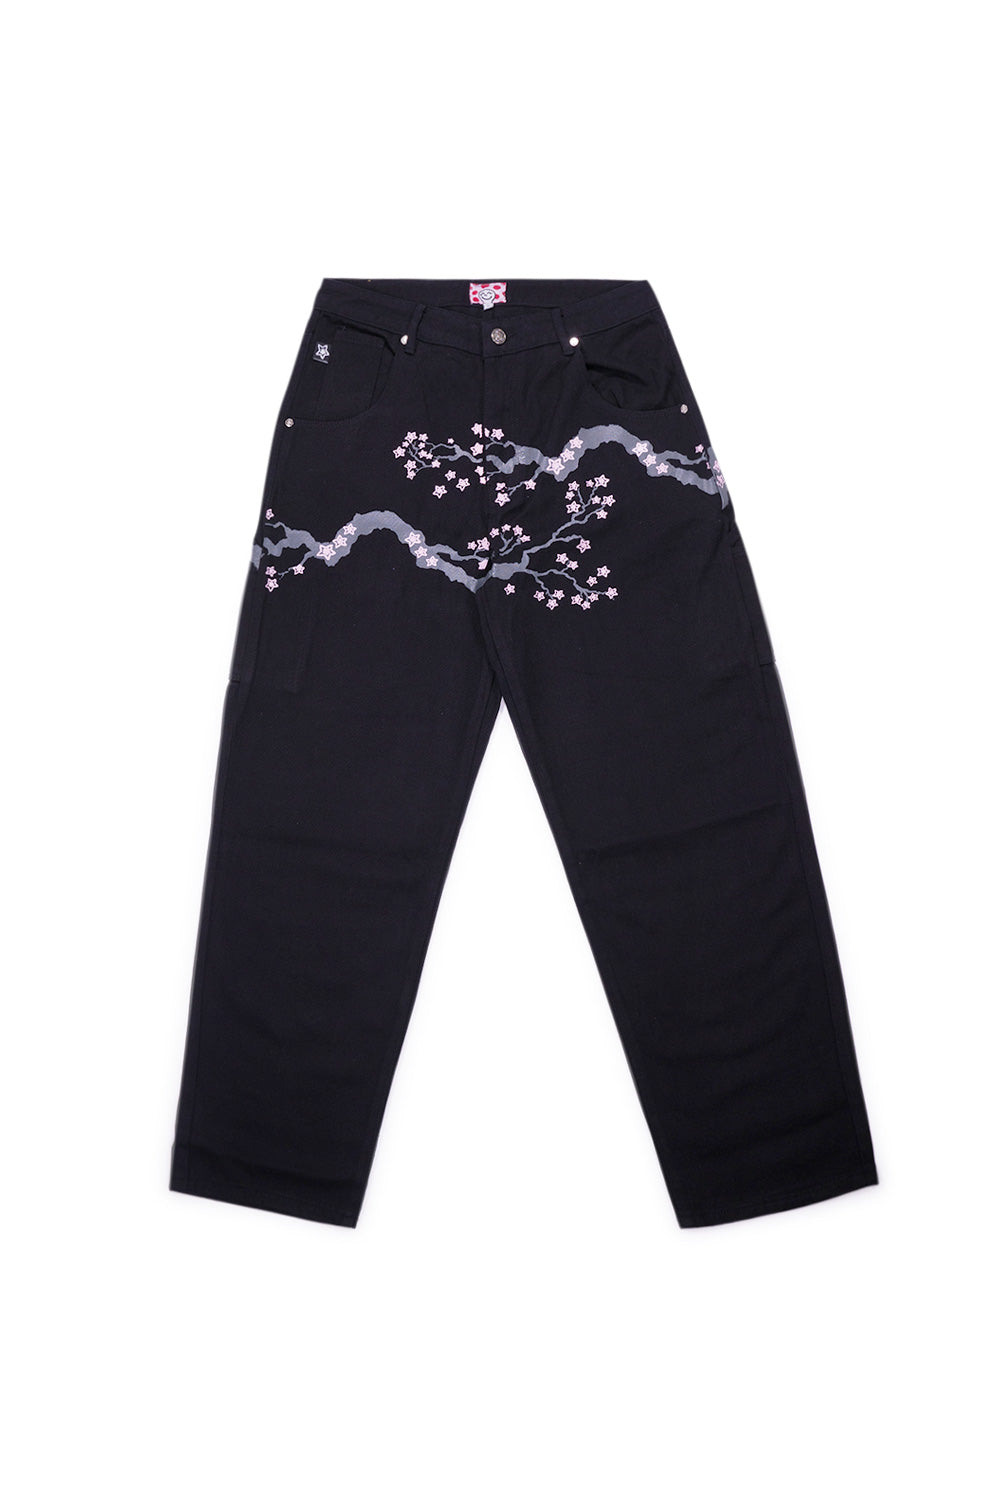 Star Team Cherry Blosson Star Carpenter Jeans Black - BONKERS